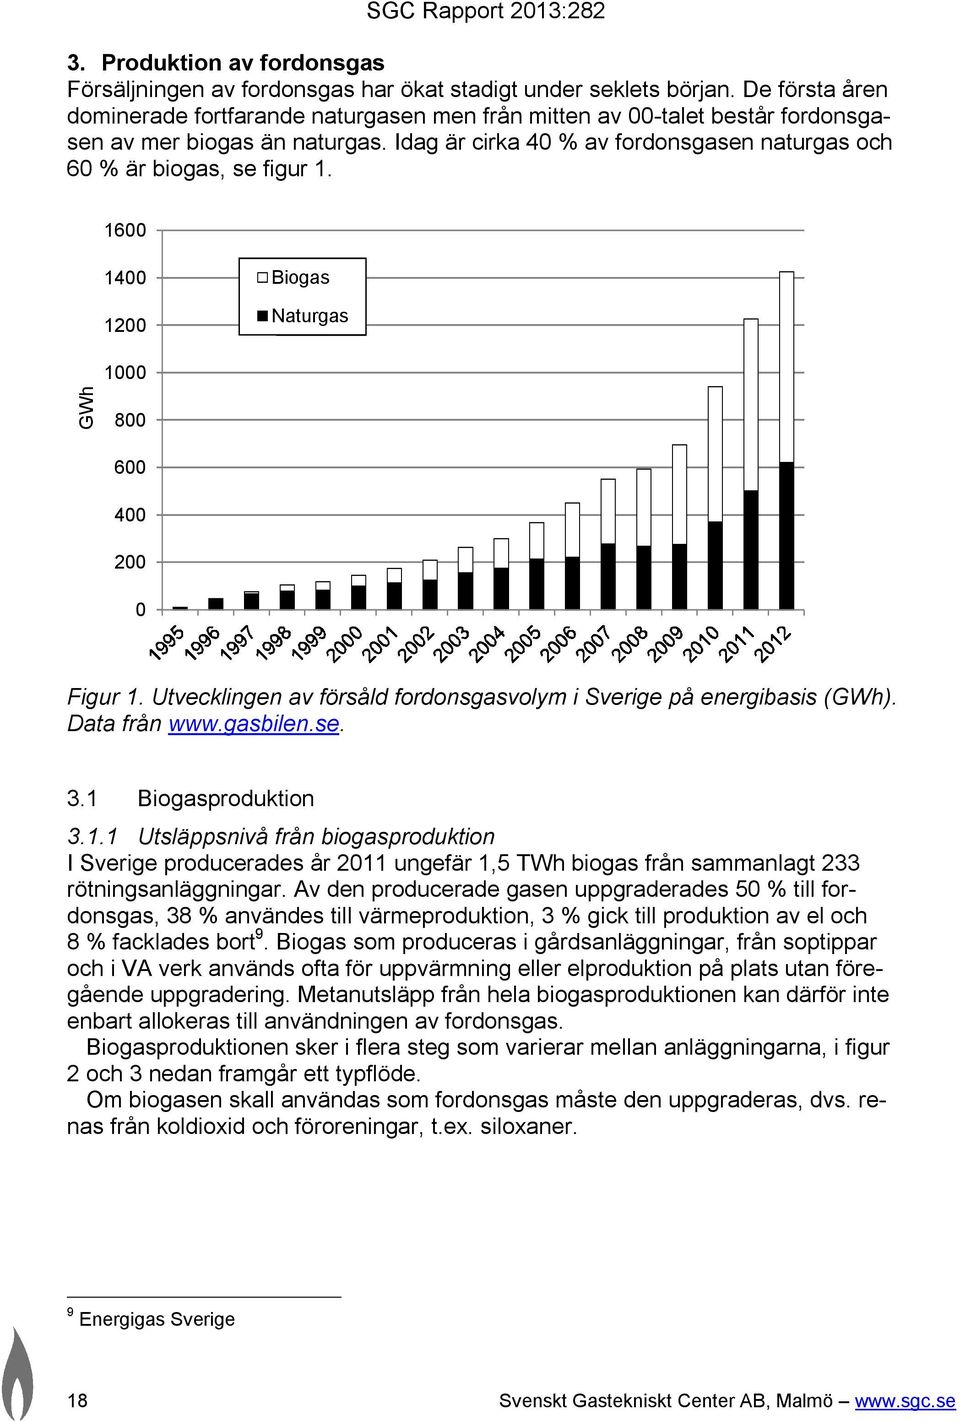 1600 1400 1200 Biogas Naturgas GWh 1000 800 600 400 200 0 Figur 1. Utvecklingen av försåld fordonsgasvolym i Sverige på energibasis (GWh). Data från www.gasbilen.se. 3.1 Biogasproduktion 3.1.1 Utsläppsnivå från biogasproduktion I Sverige producerades år 2011 ungefär 1,5 TWh biogas från sammanlagt 233 rötningsanläggningar.